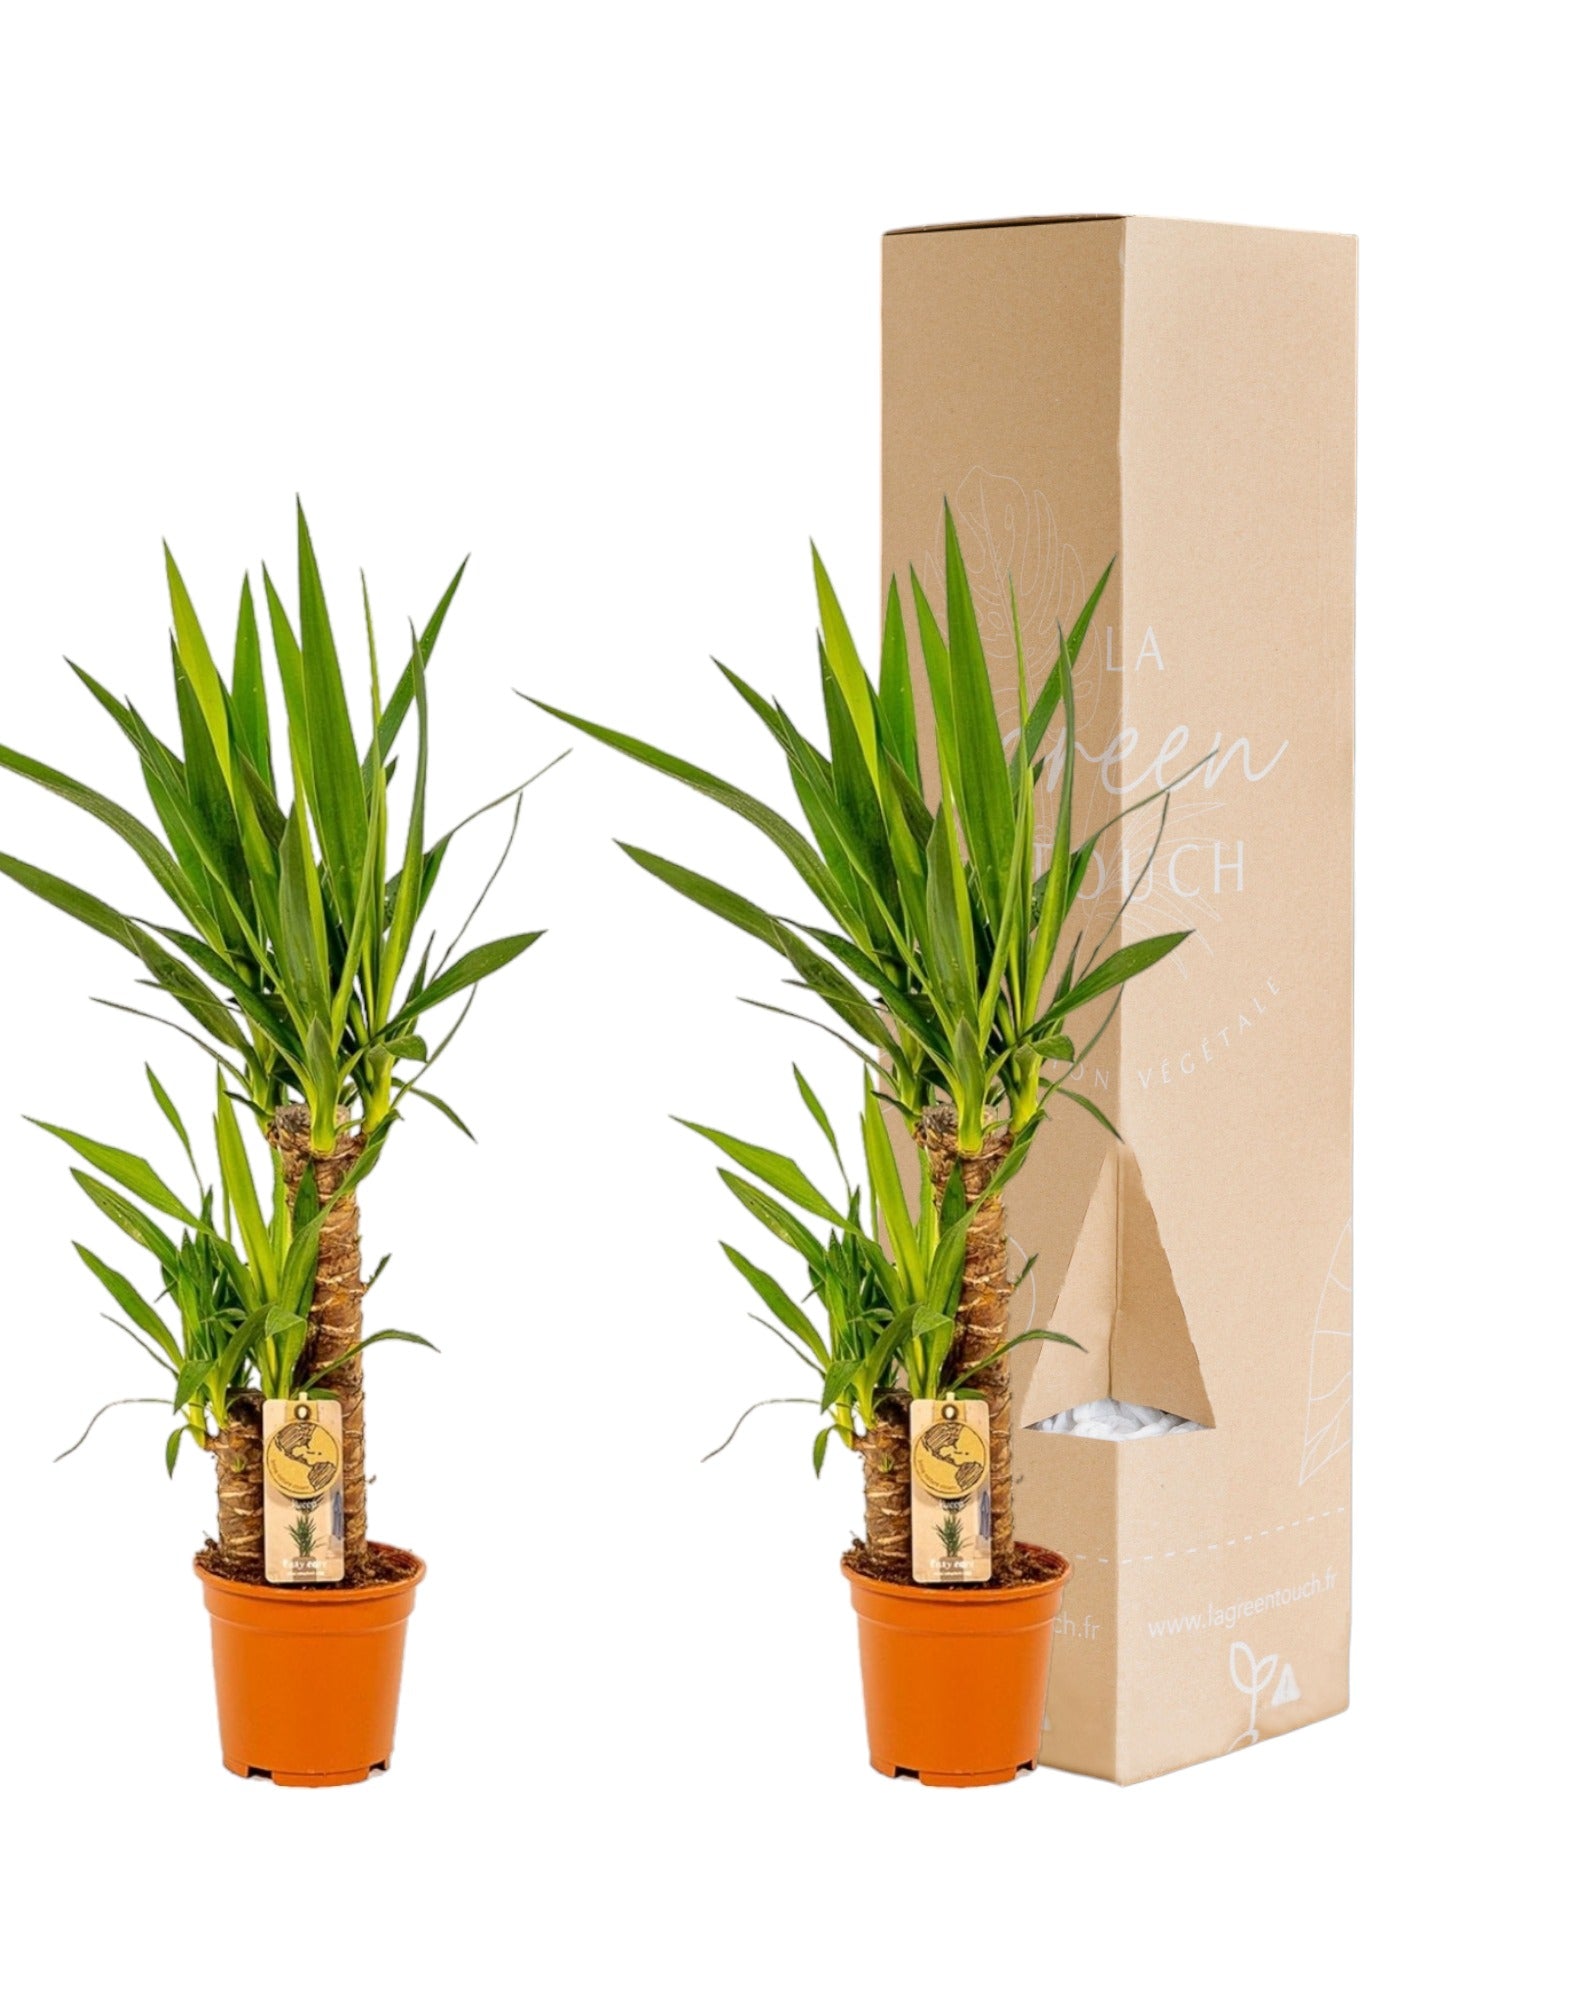 Plante d'intérieur - coffret yucca - lot de 2 plantes, h90cm 90cm